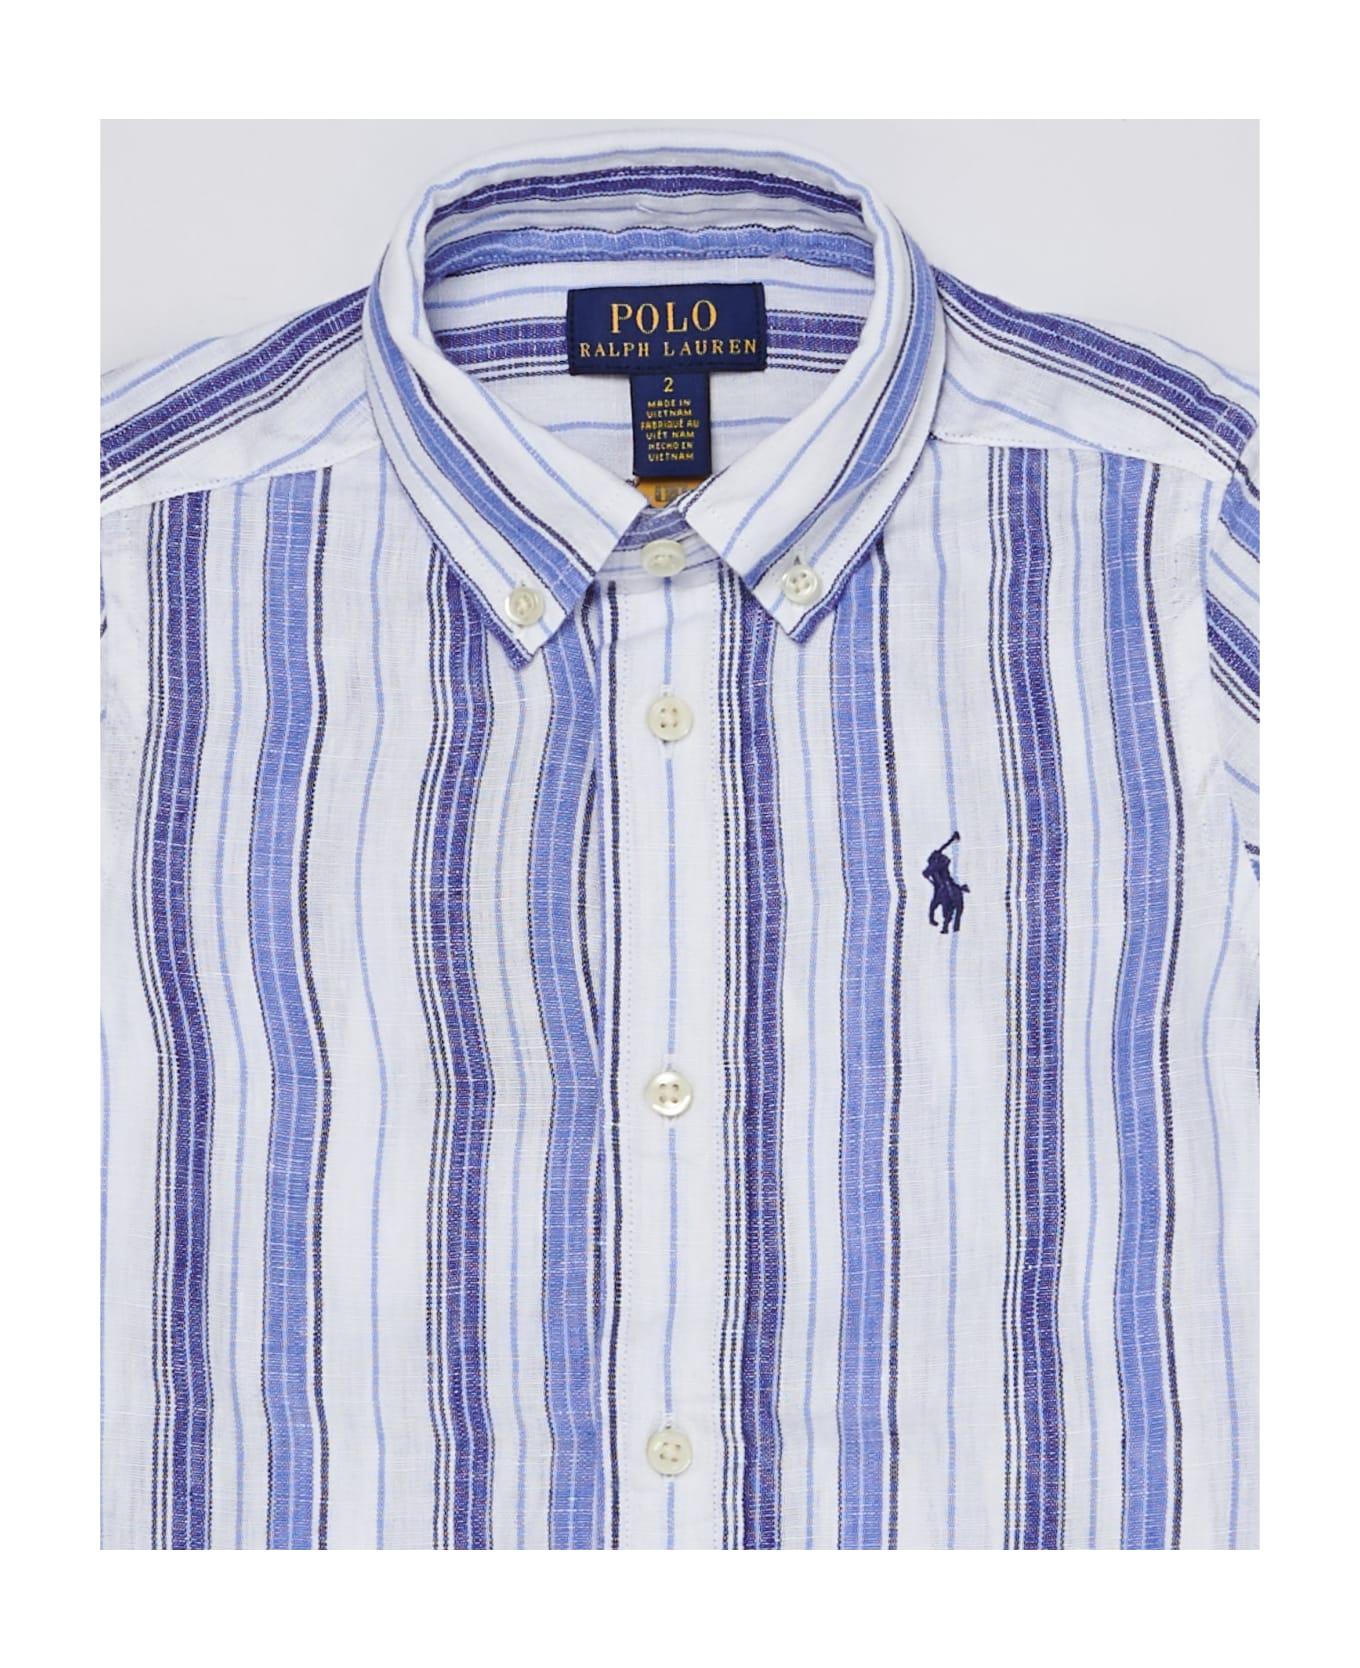 Polo Ralph Lauren Shirt Shirt - BIANCO-AZZURRO シャツ